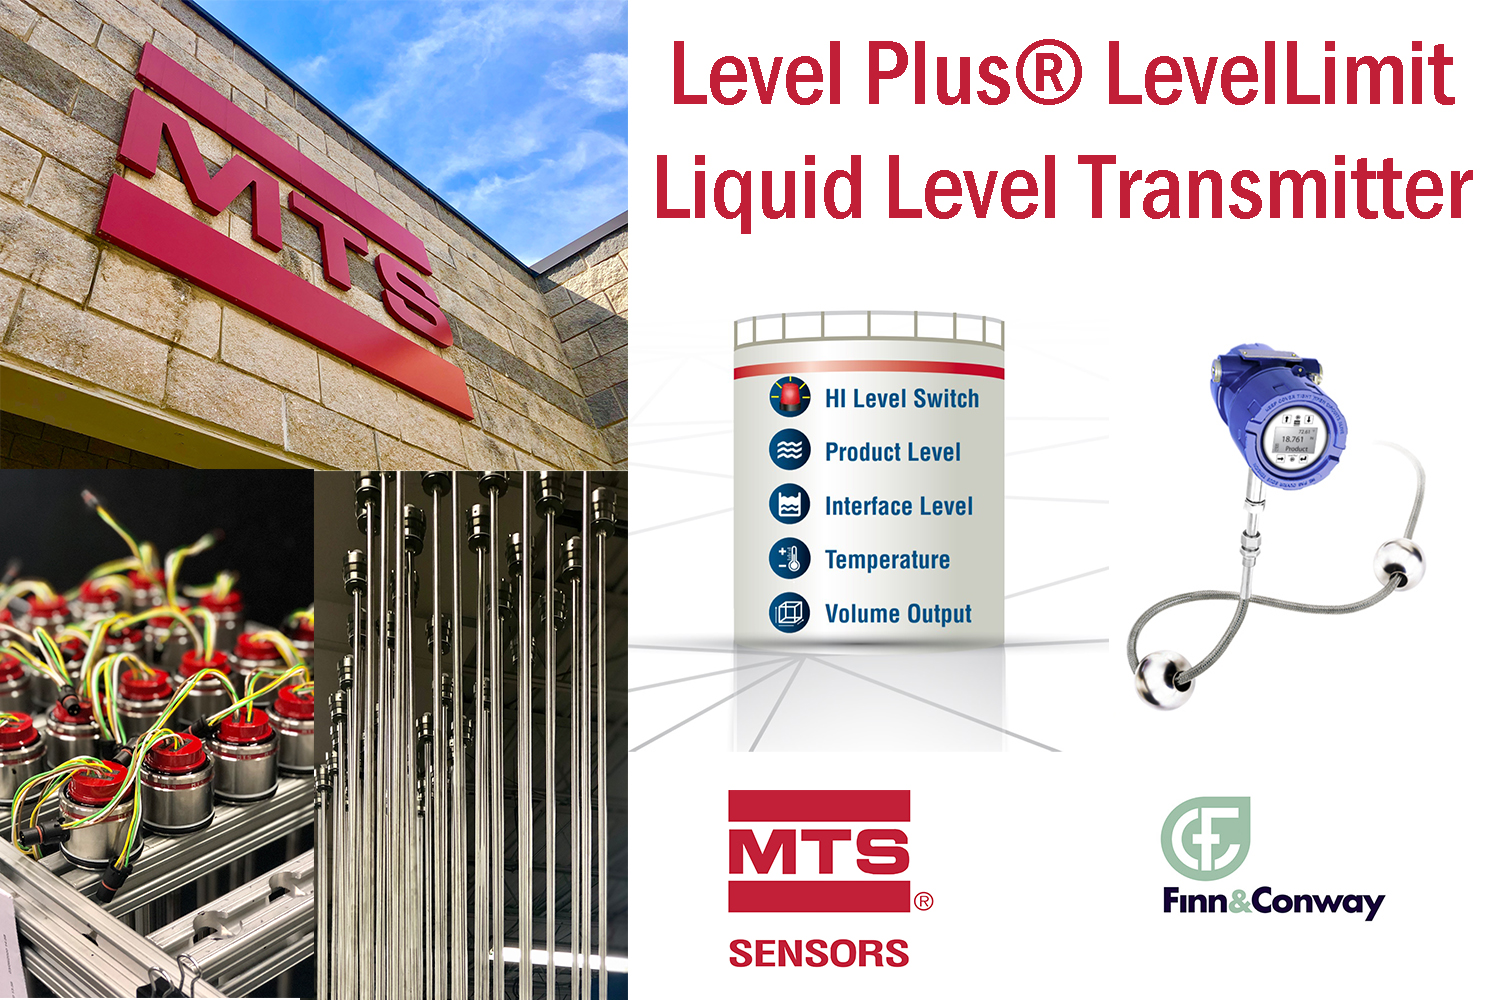 MTS Sensors Level Plus® LevelLimit